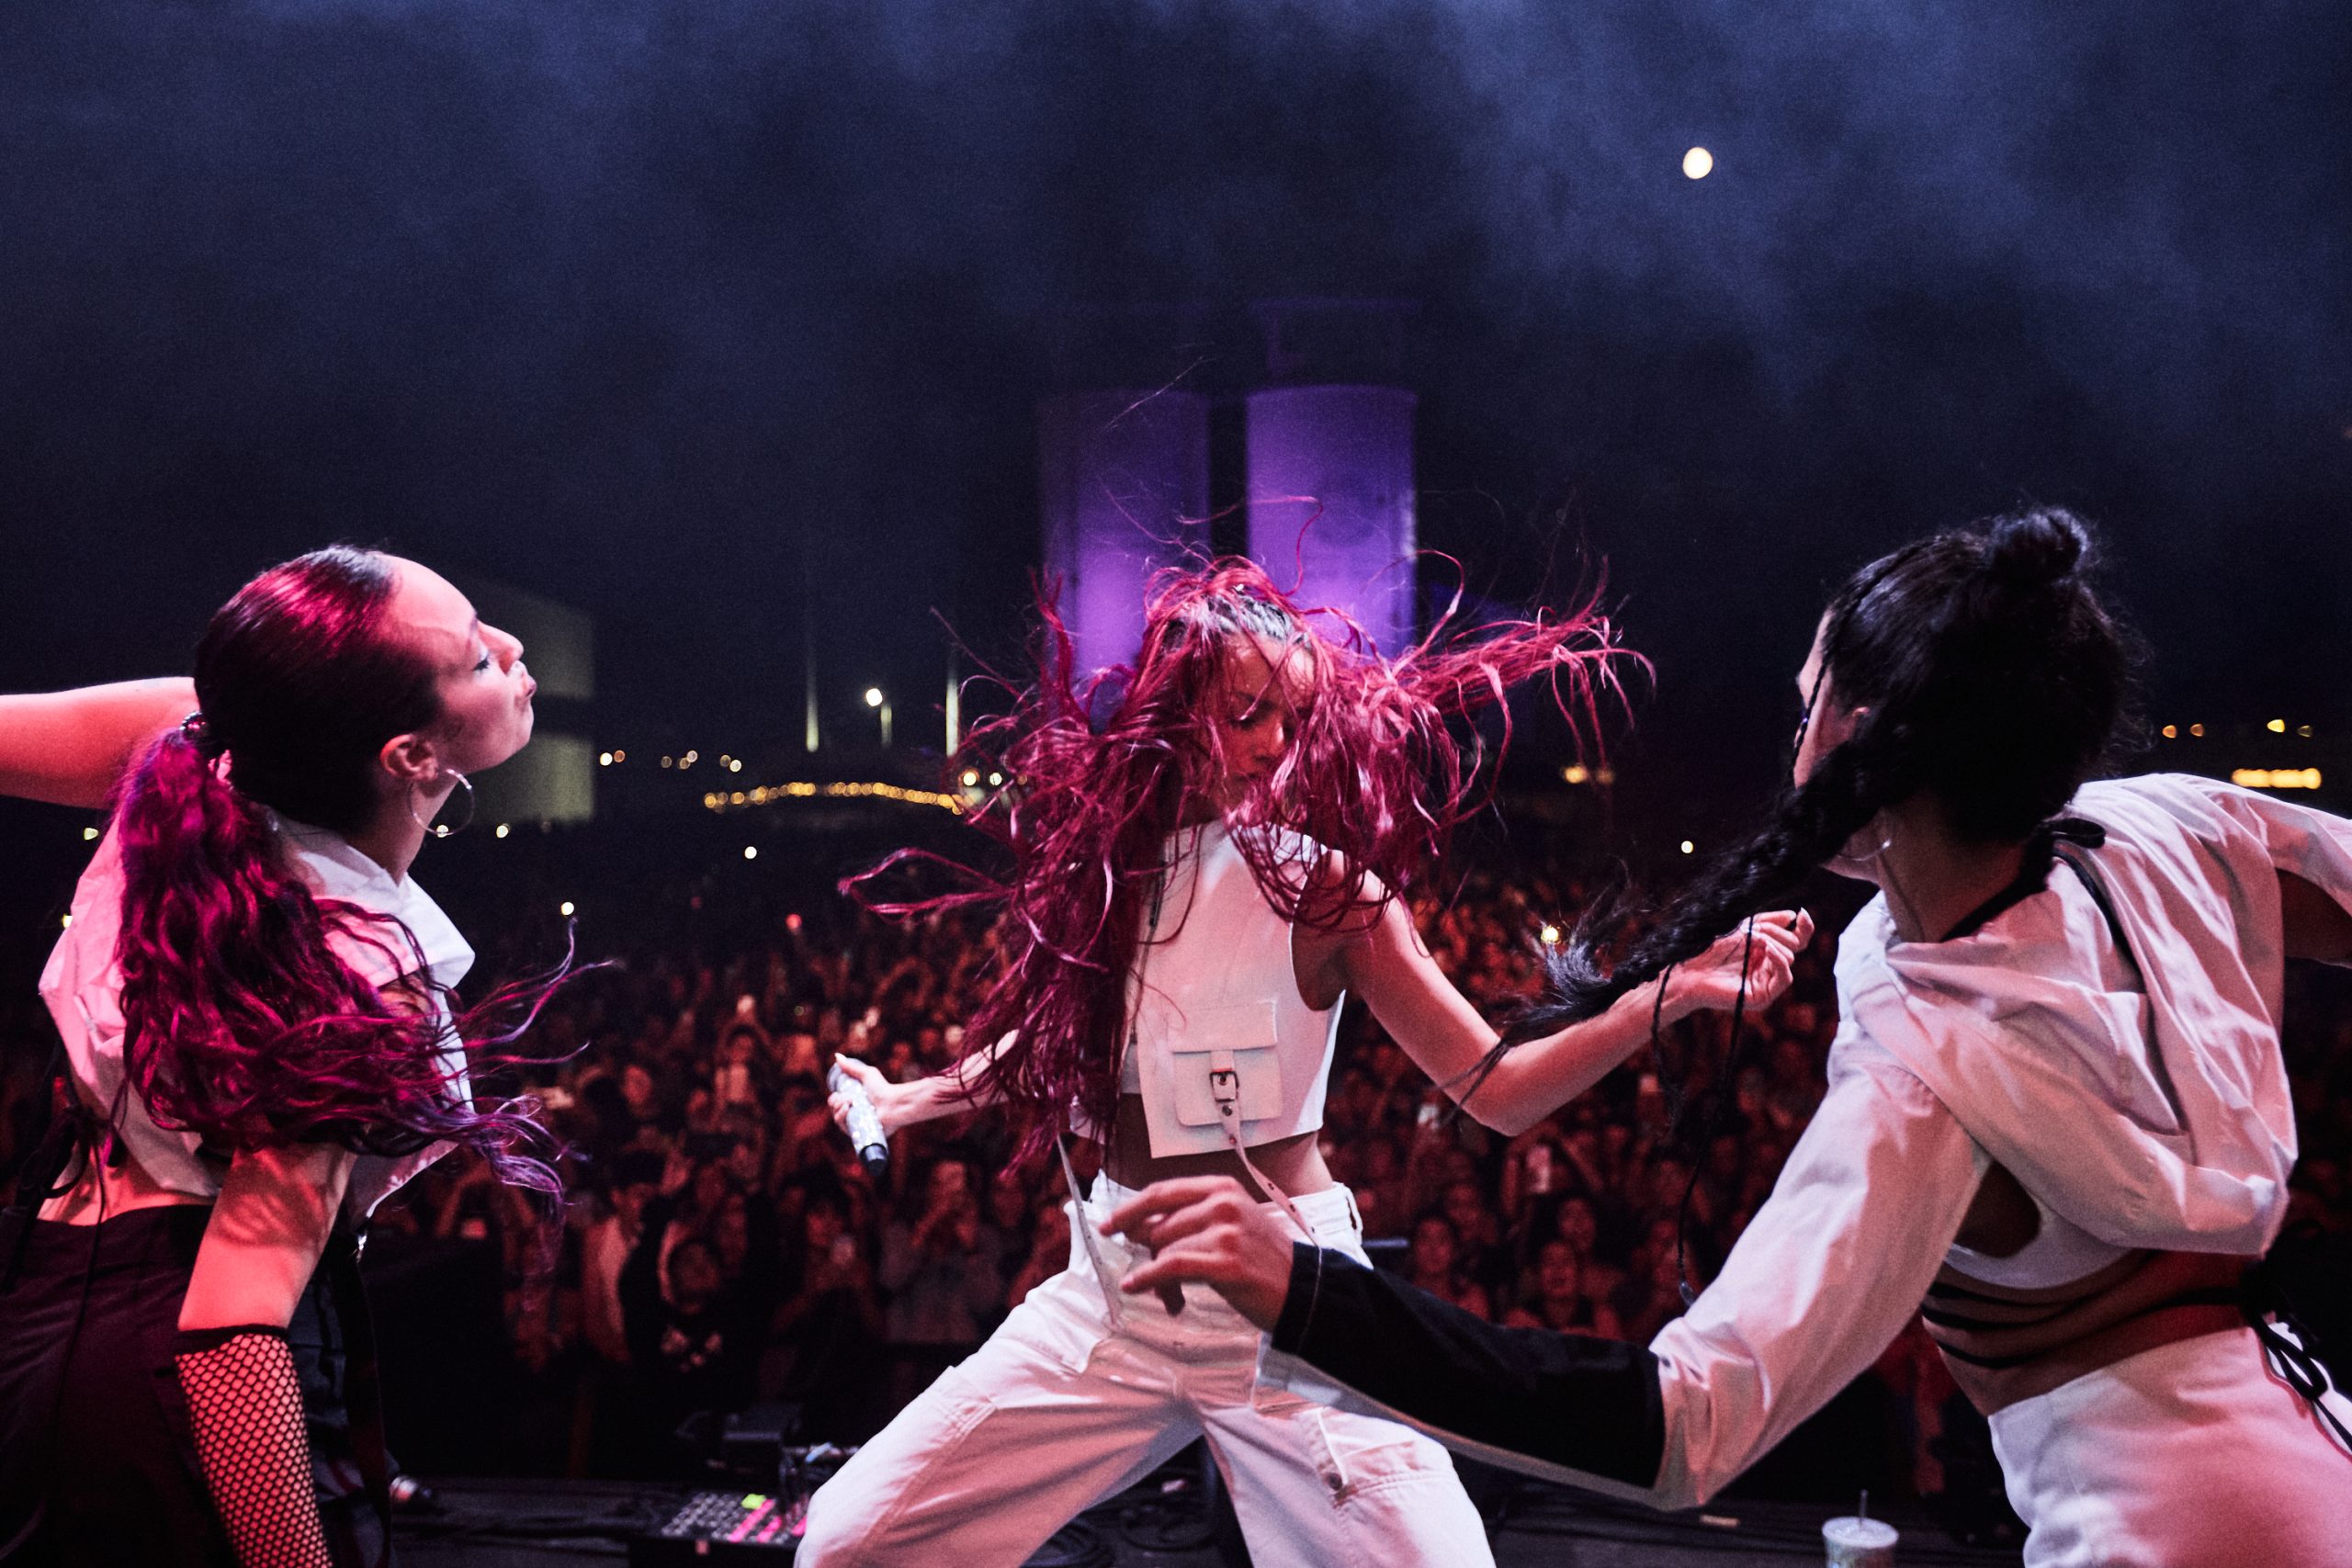 A cantora Emilia dança no palco junto às suas bailarinas em show na Espanha.